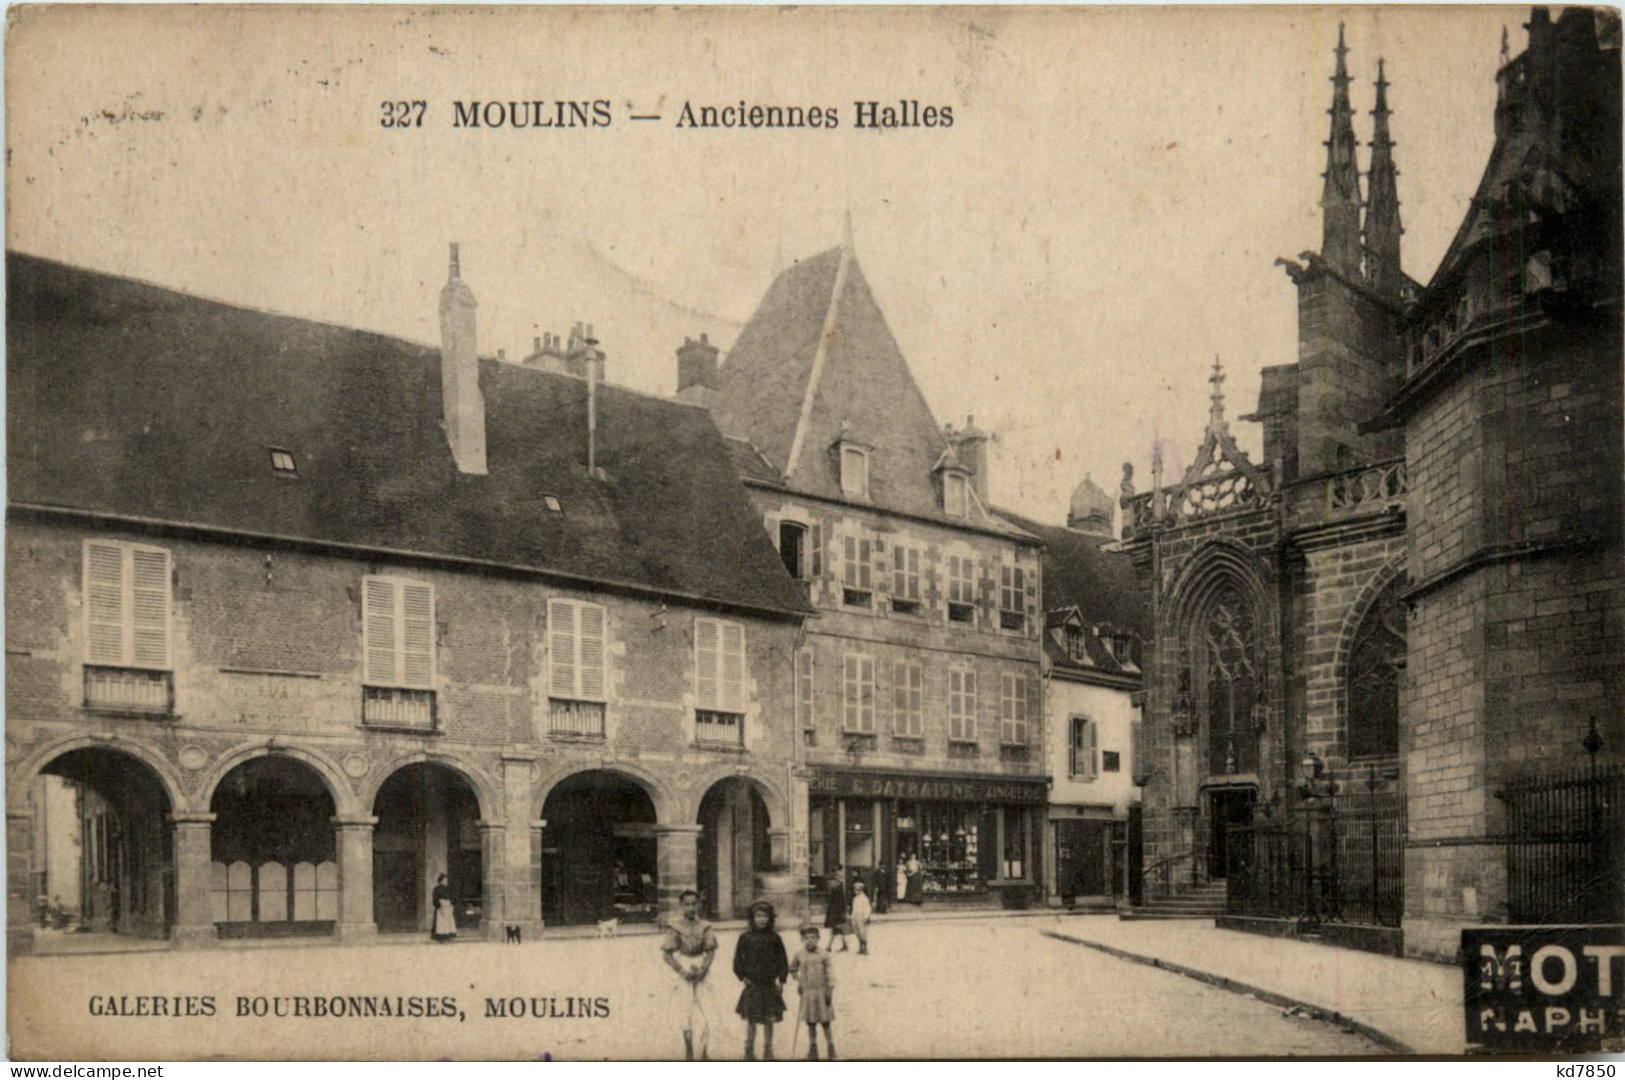 Moulins, Amciennes Halles - Moulins